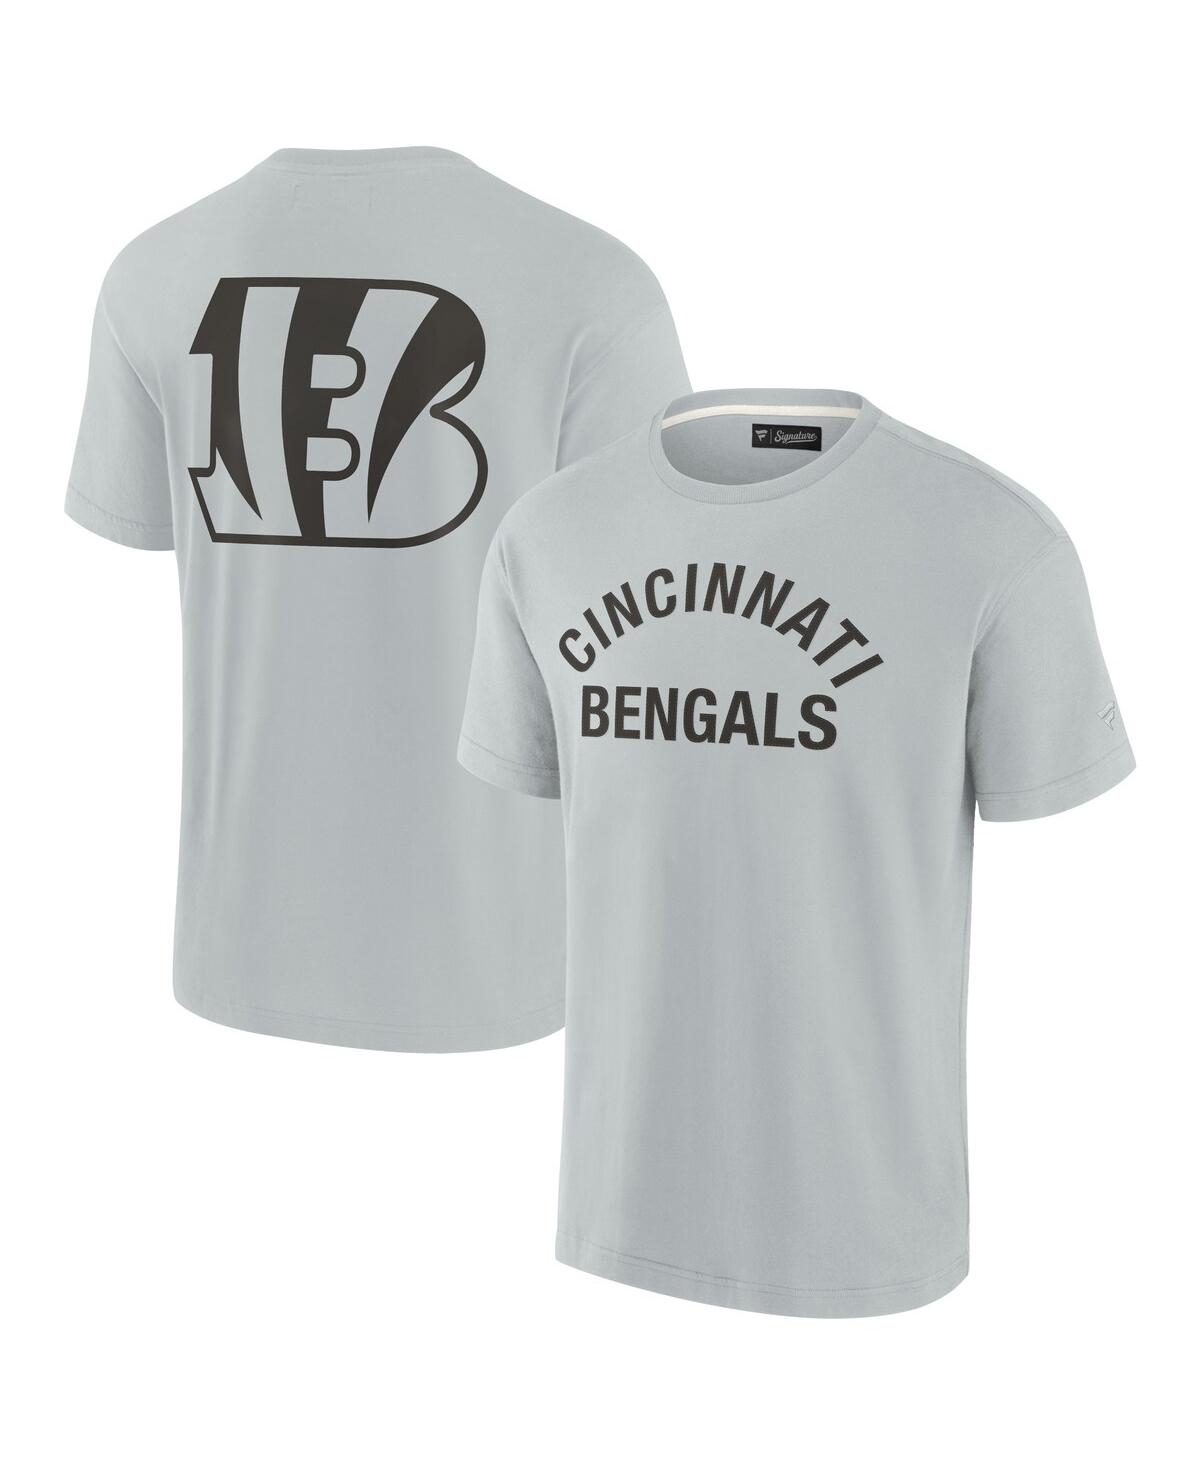 Men's and Women's Fanatics Signature Gray Cincinnati Bengals Super Soft Short Sleeve T-shirt - Gray